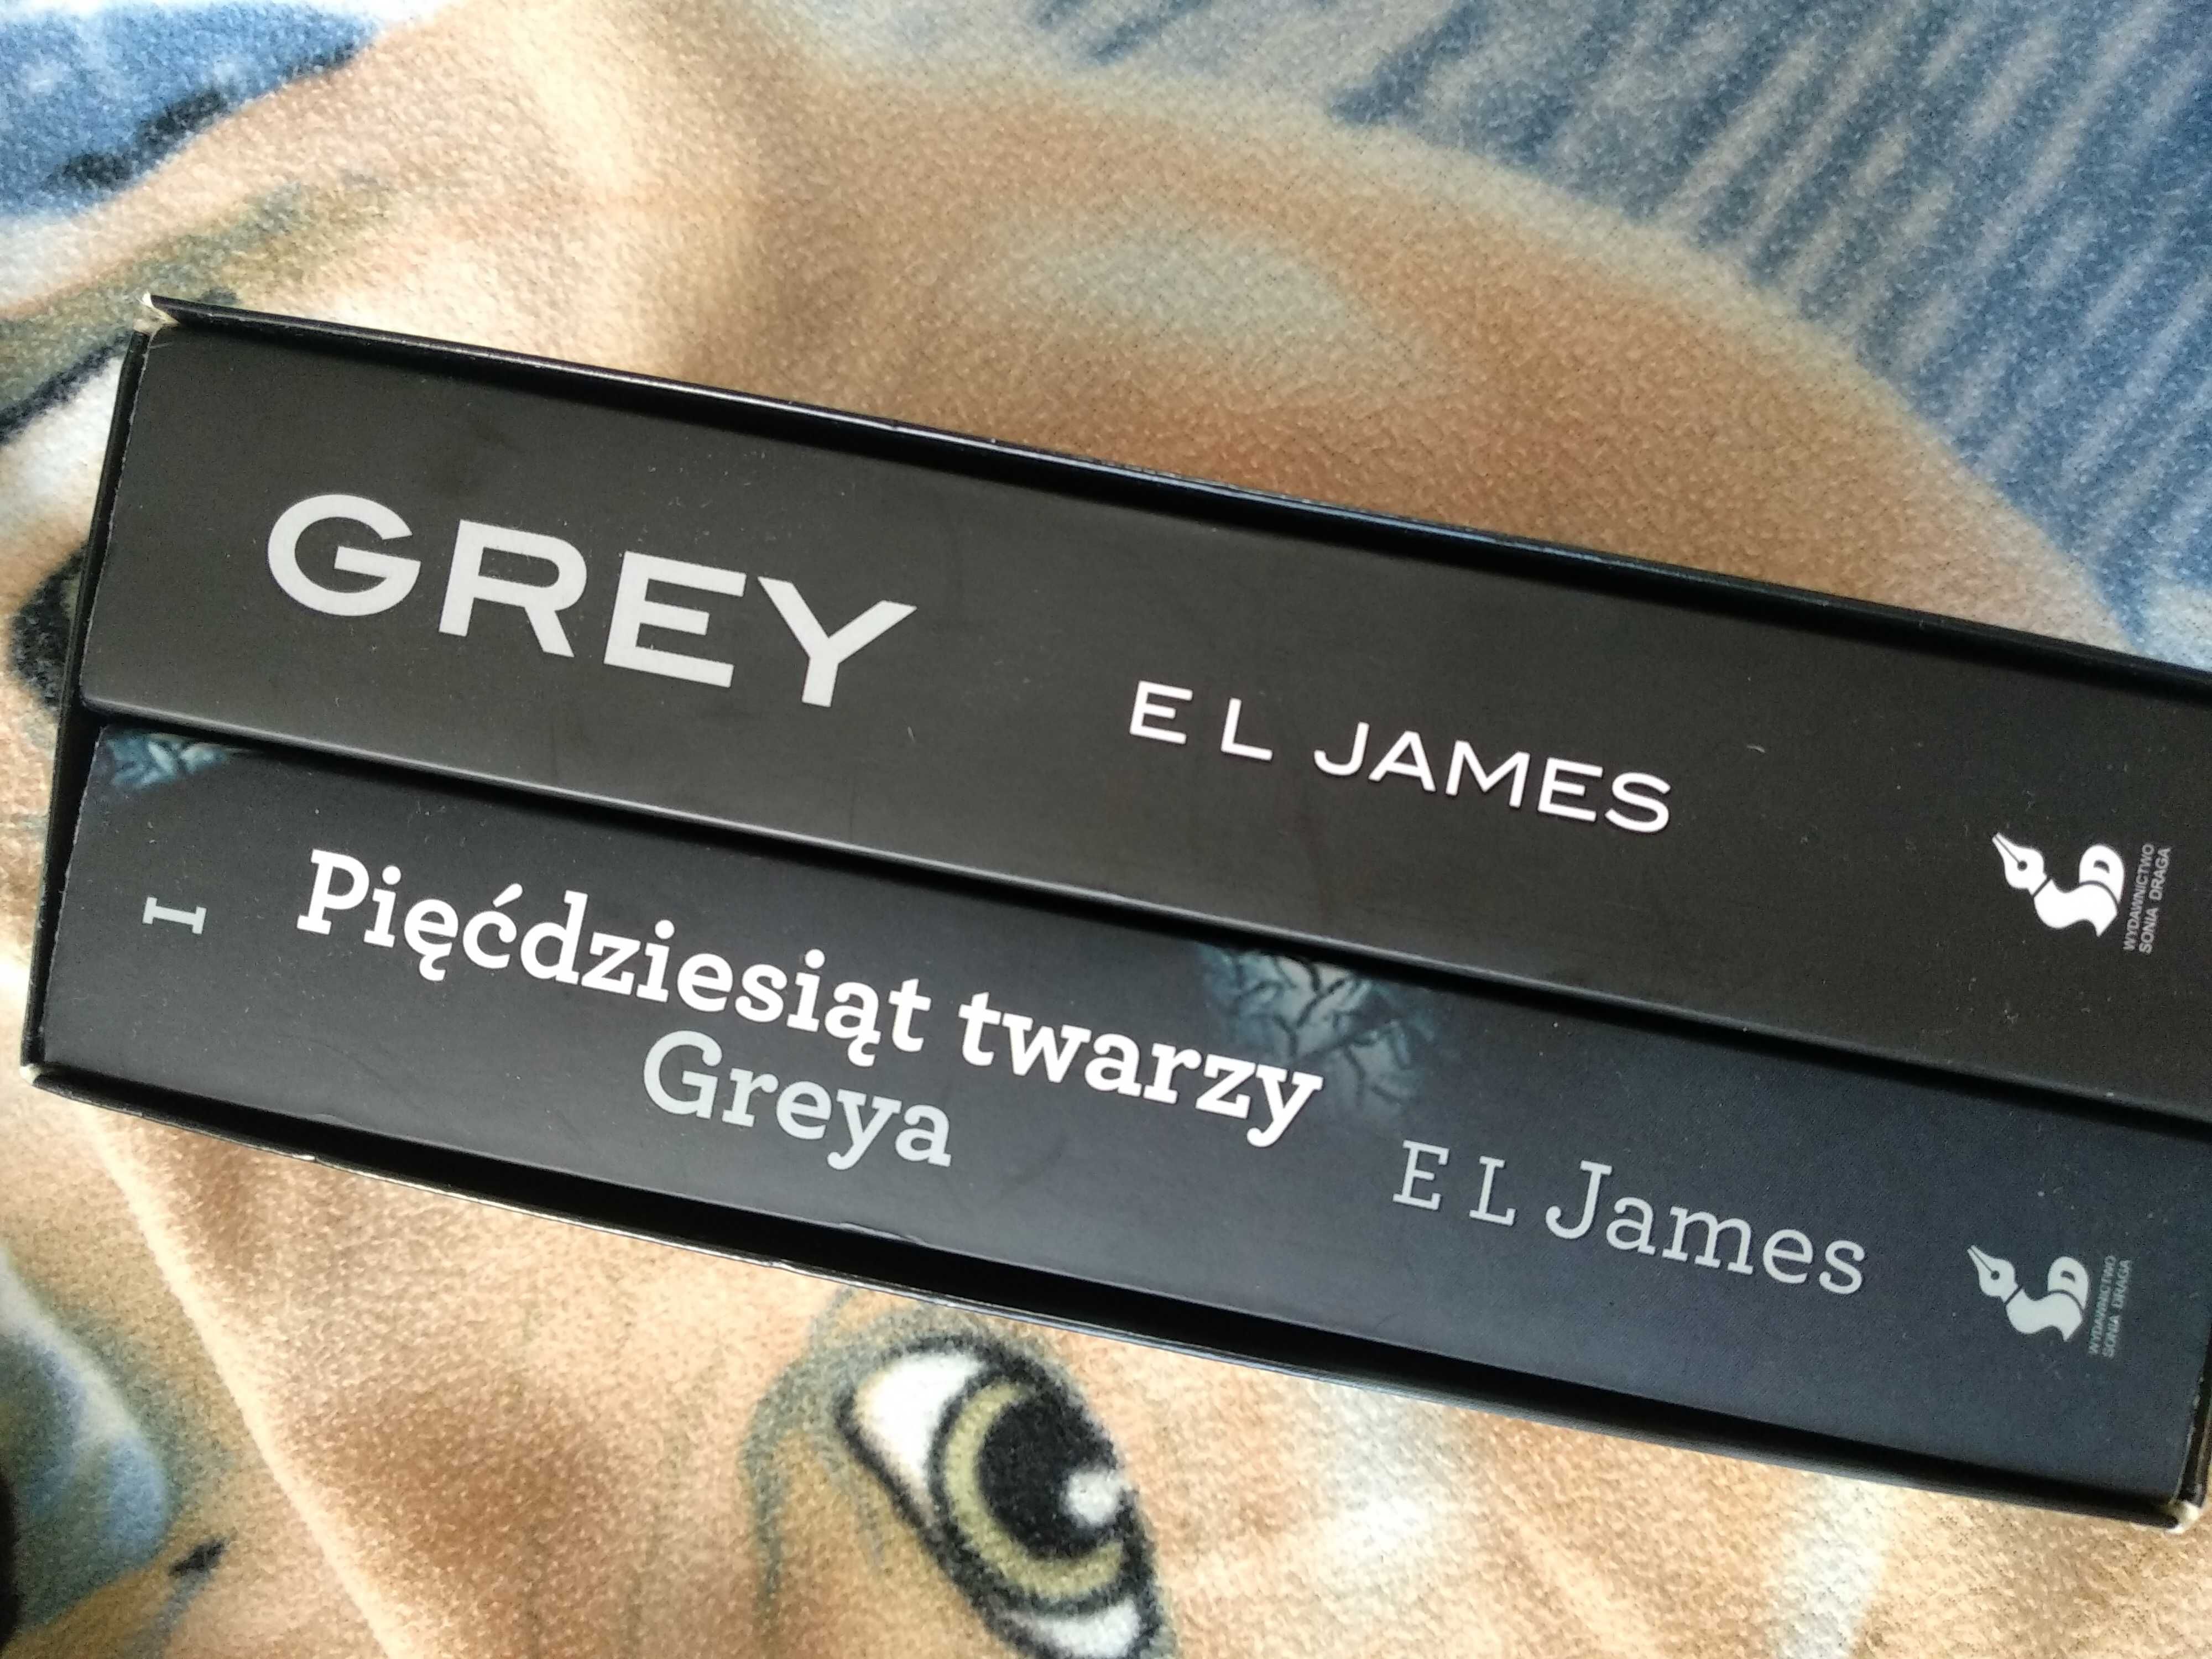 Zestaw książek Pięćdziesiąt twarzy Greya Grey E L James